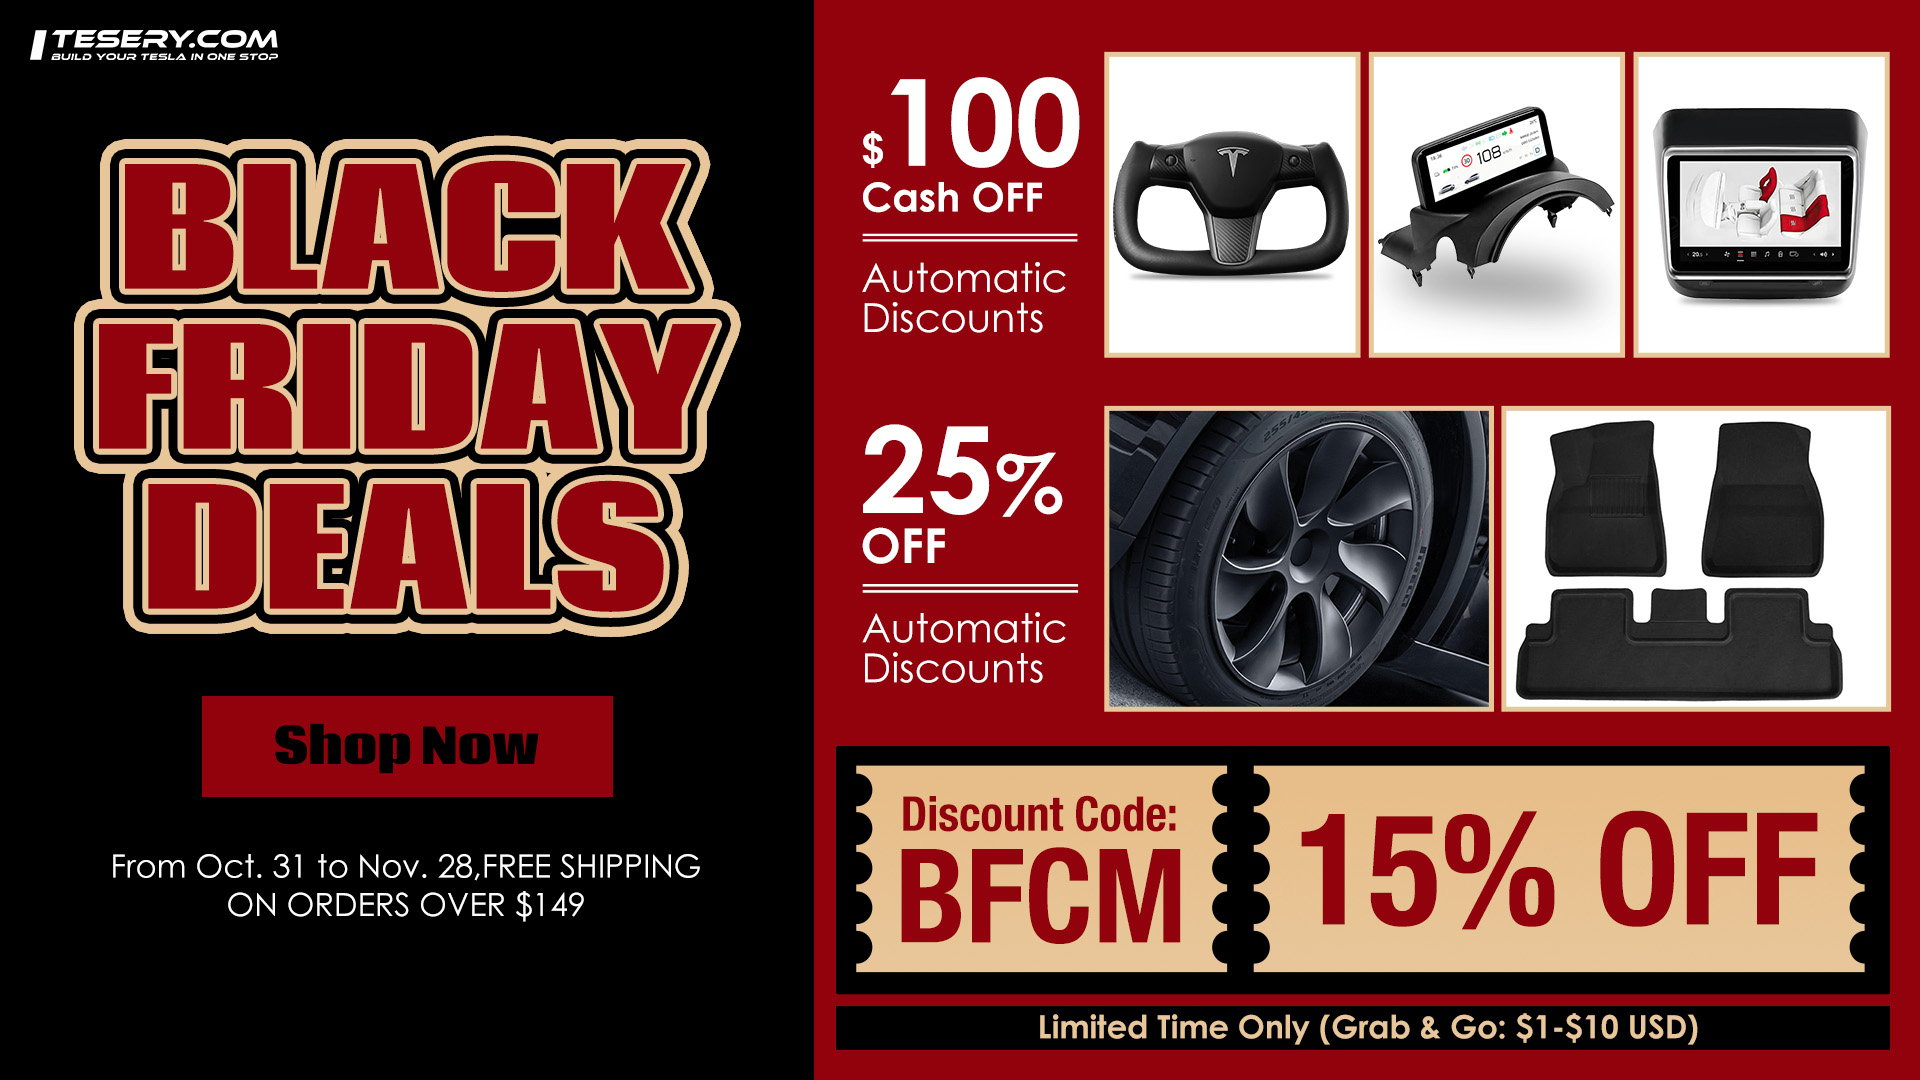 TESERY black friday deals - banner.jpg